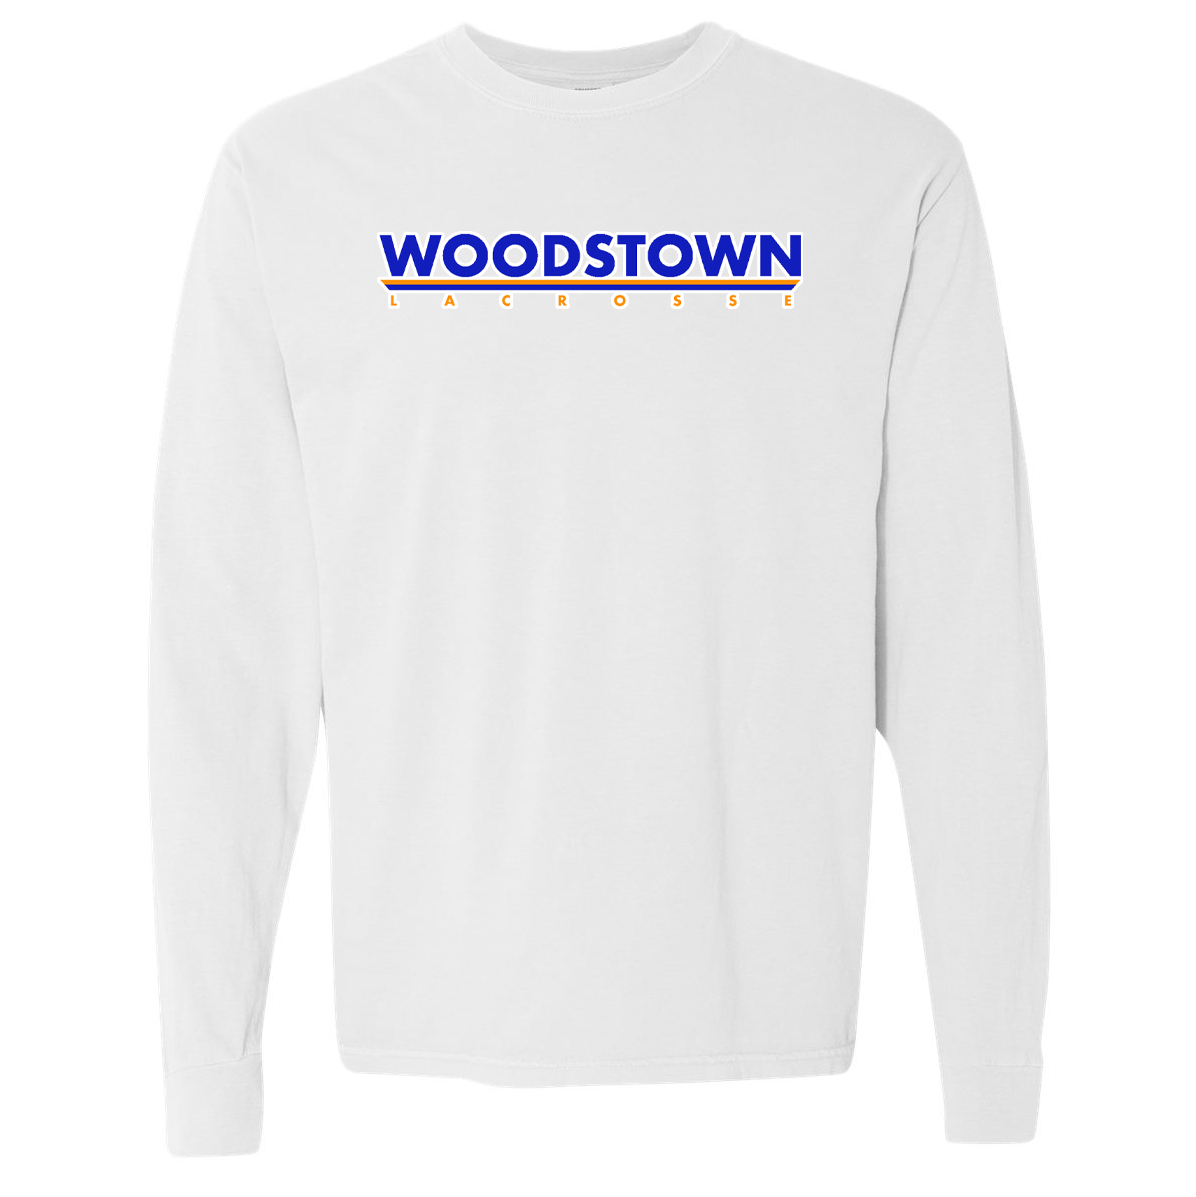 Woodstown HS Boys Lacrosse Garment Dyed Long Sleeve Tee